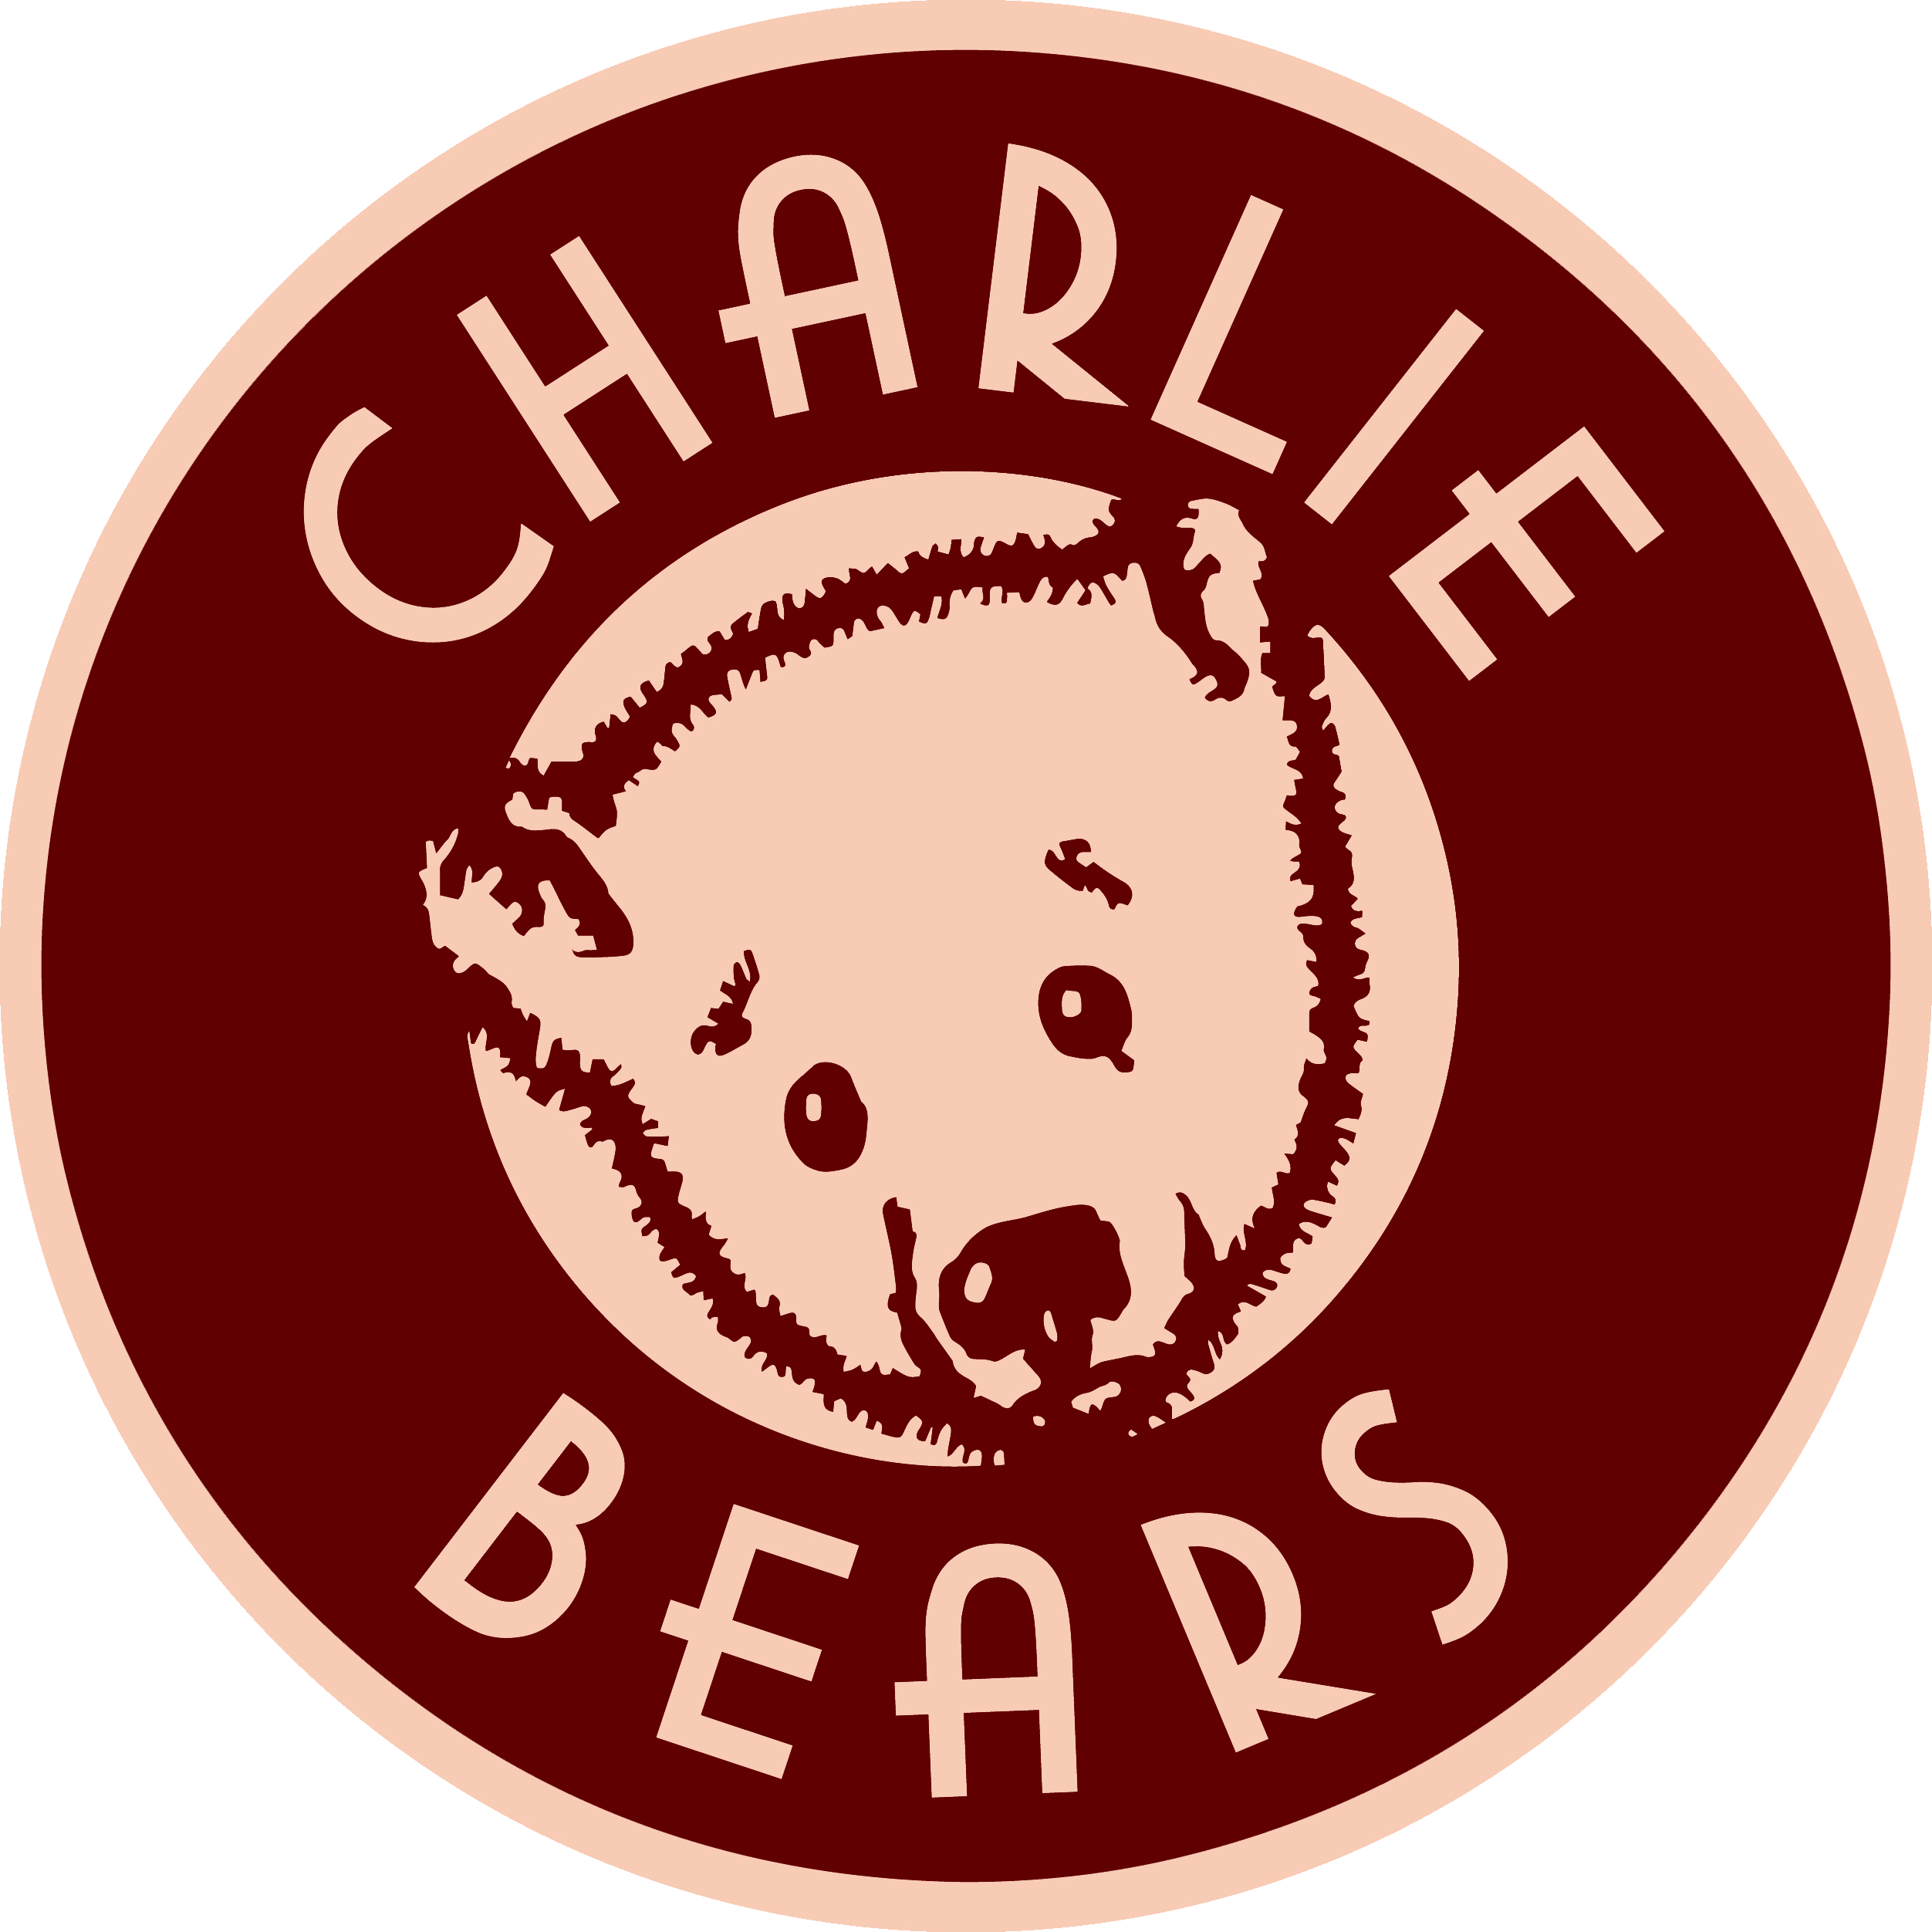 Charlie Bears Fisher BB183803 der Otter für Kinder und Sammler ist wieder da 